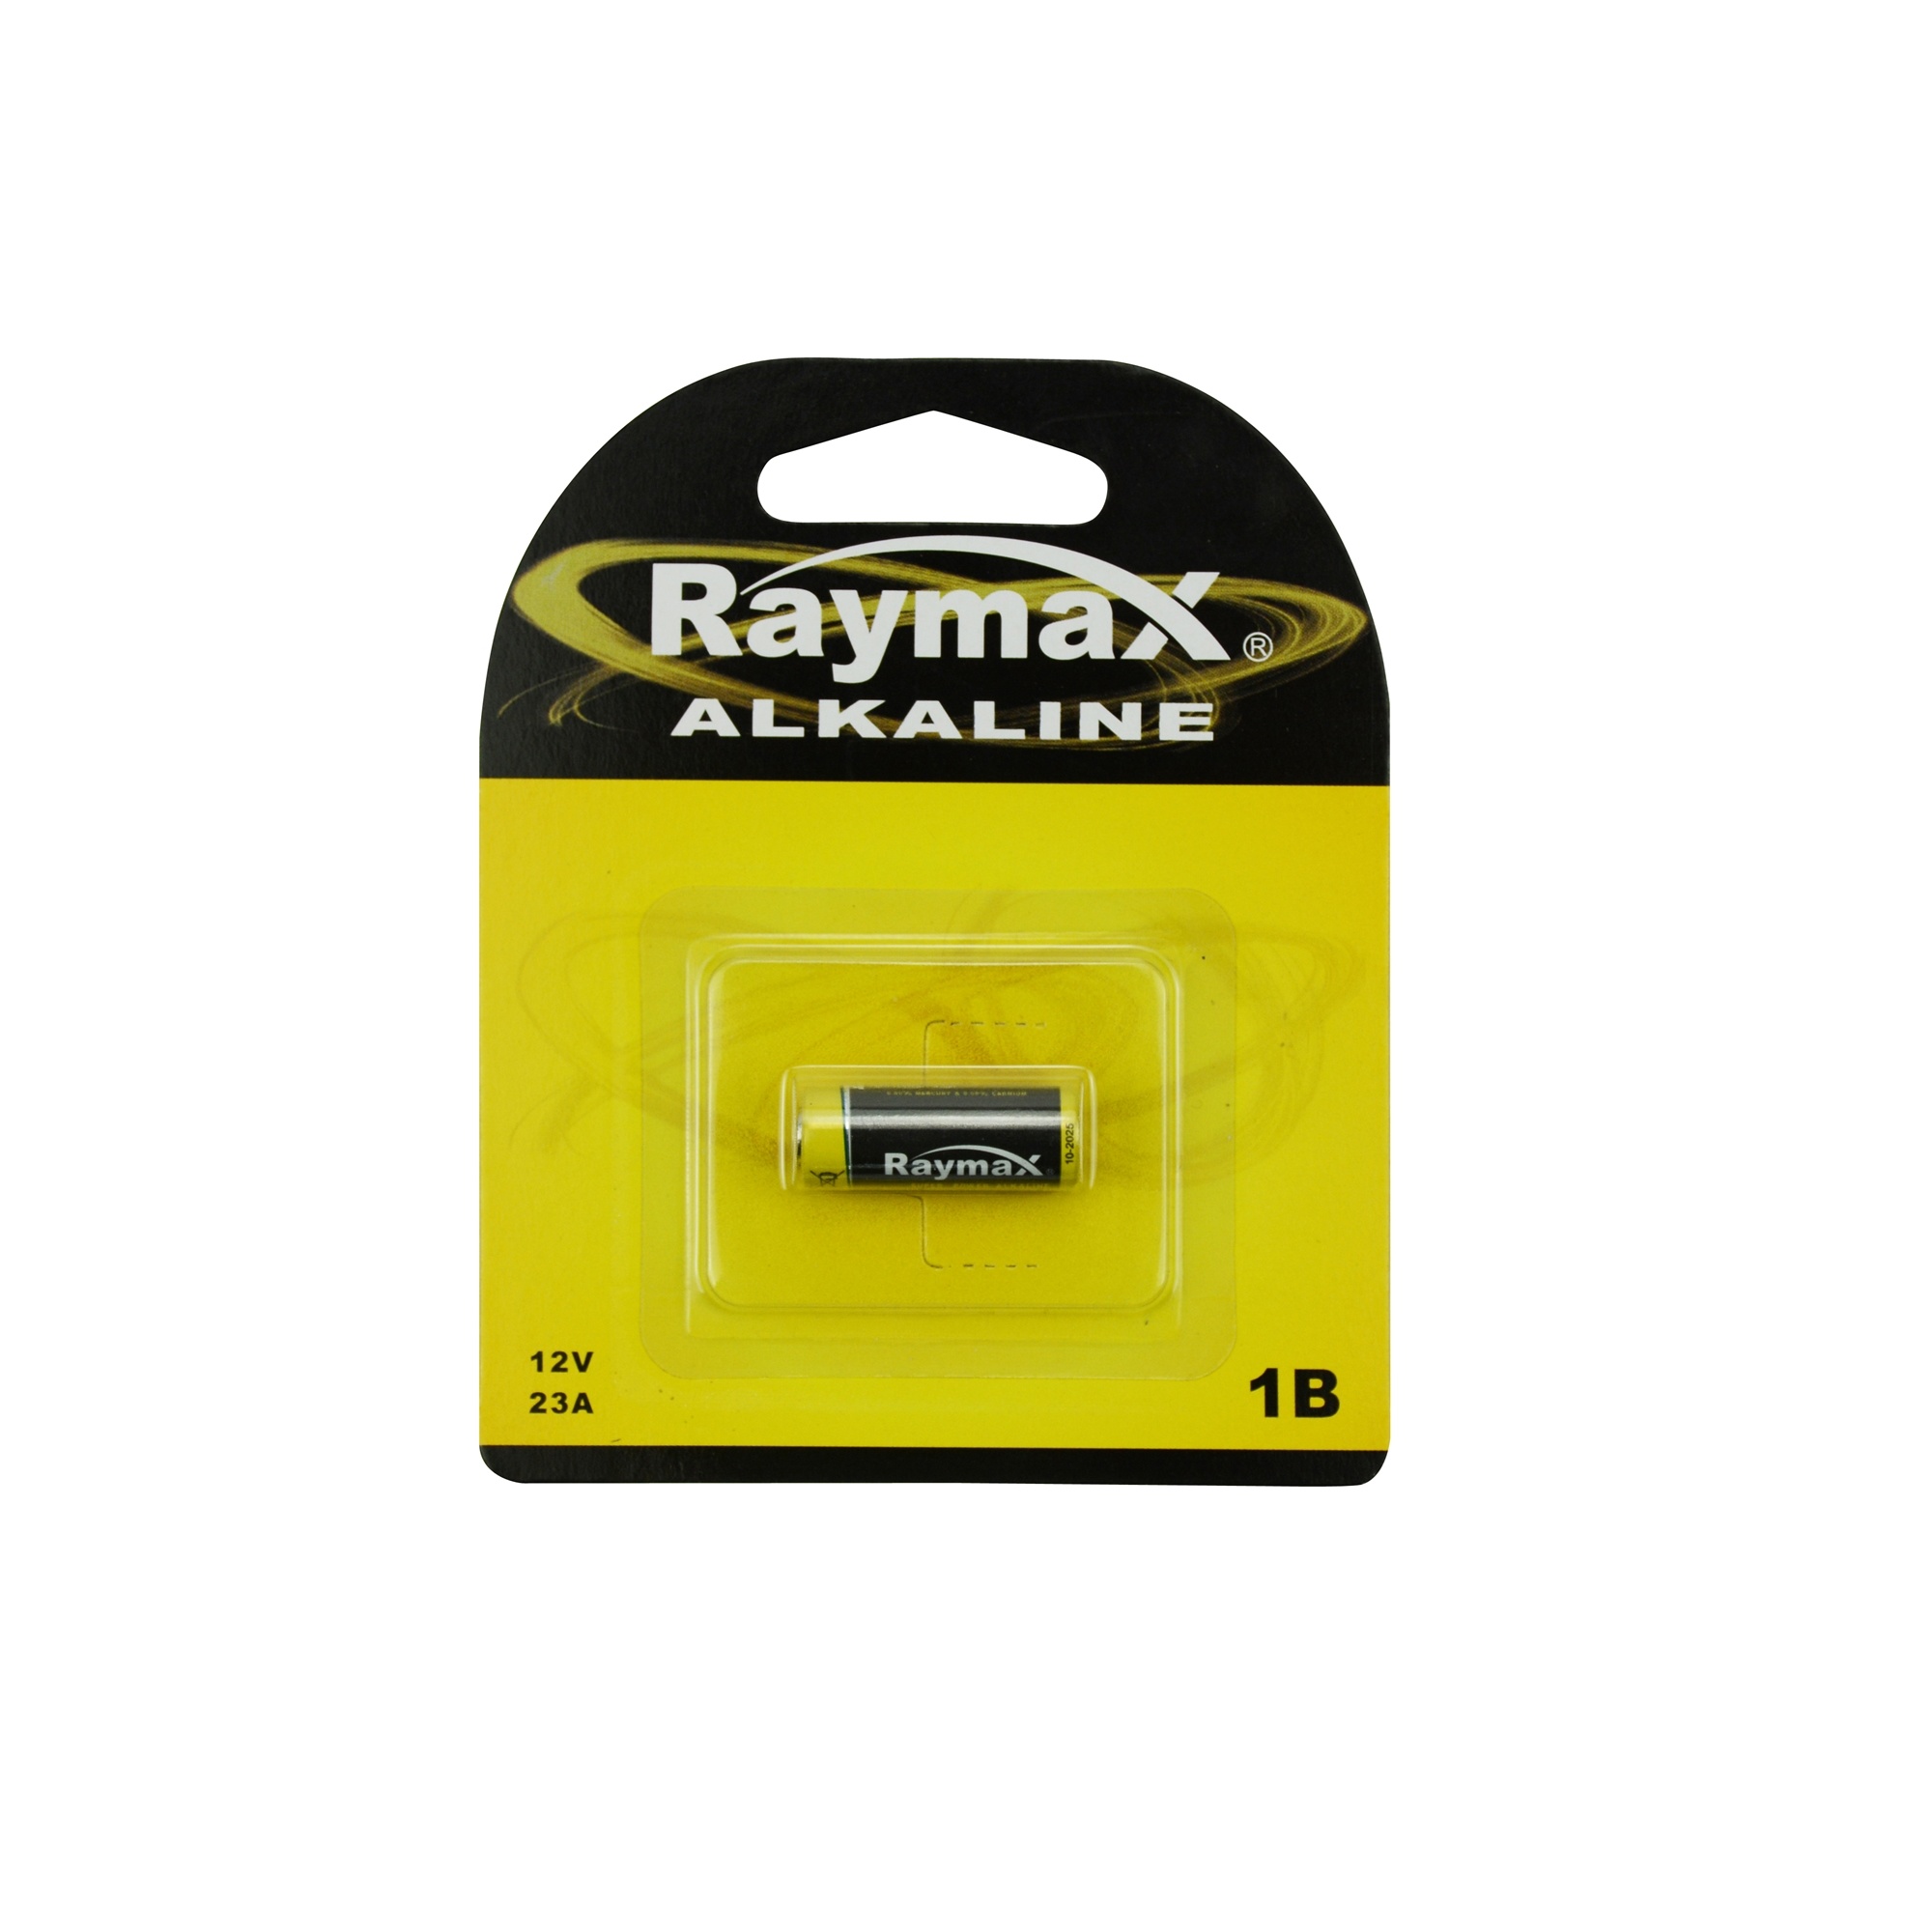 Odysseus pomp aanvaardbaar Raymax Alkaline Batterij - 23A -12 Volt kopen? Bestel online - 2Cheap